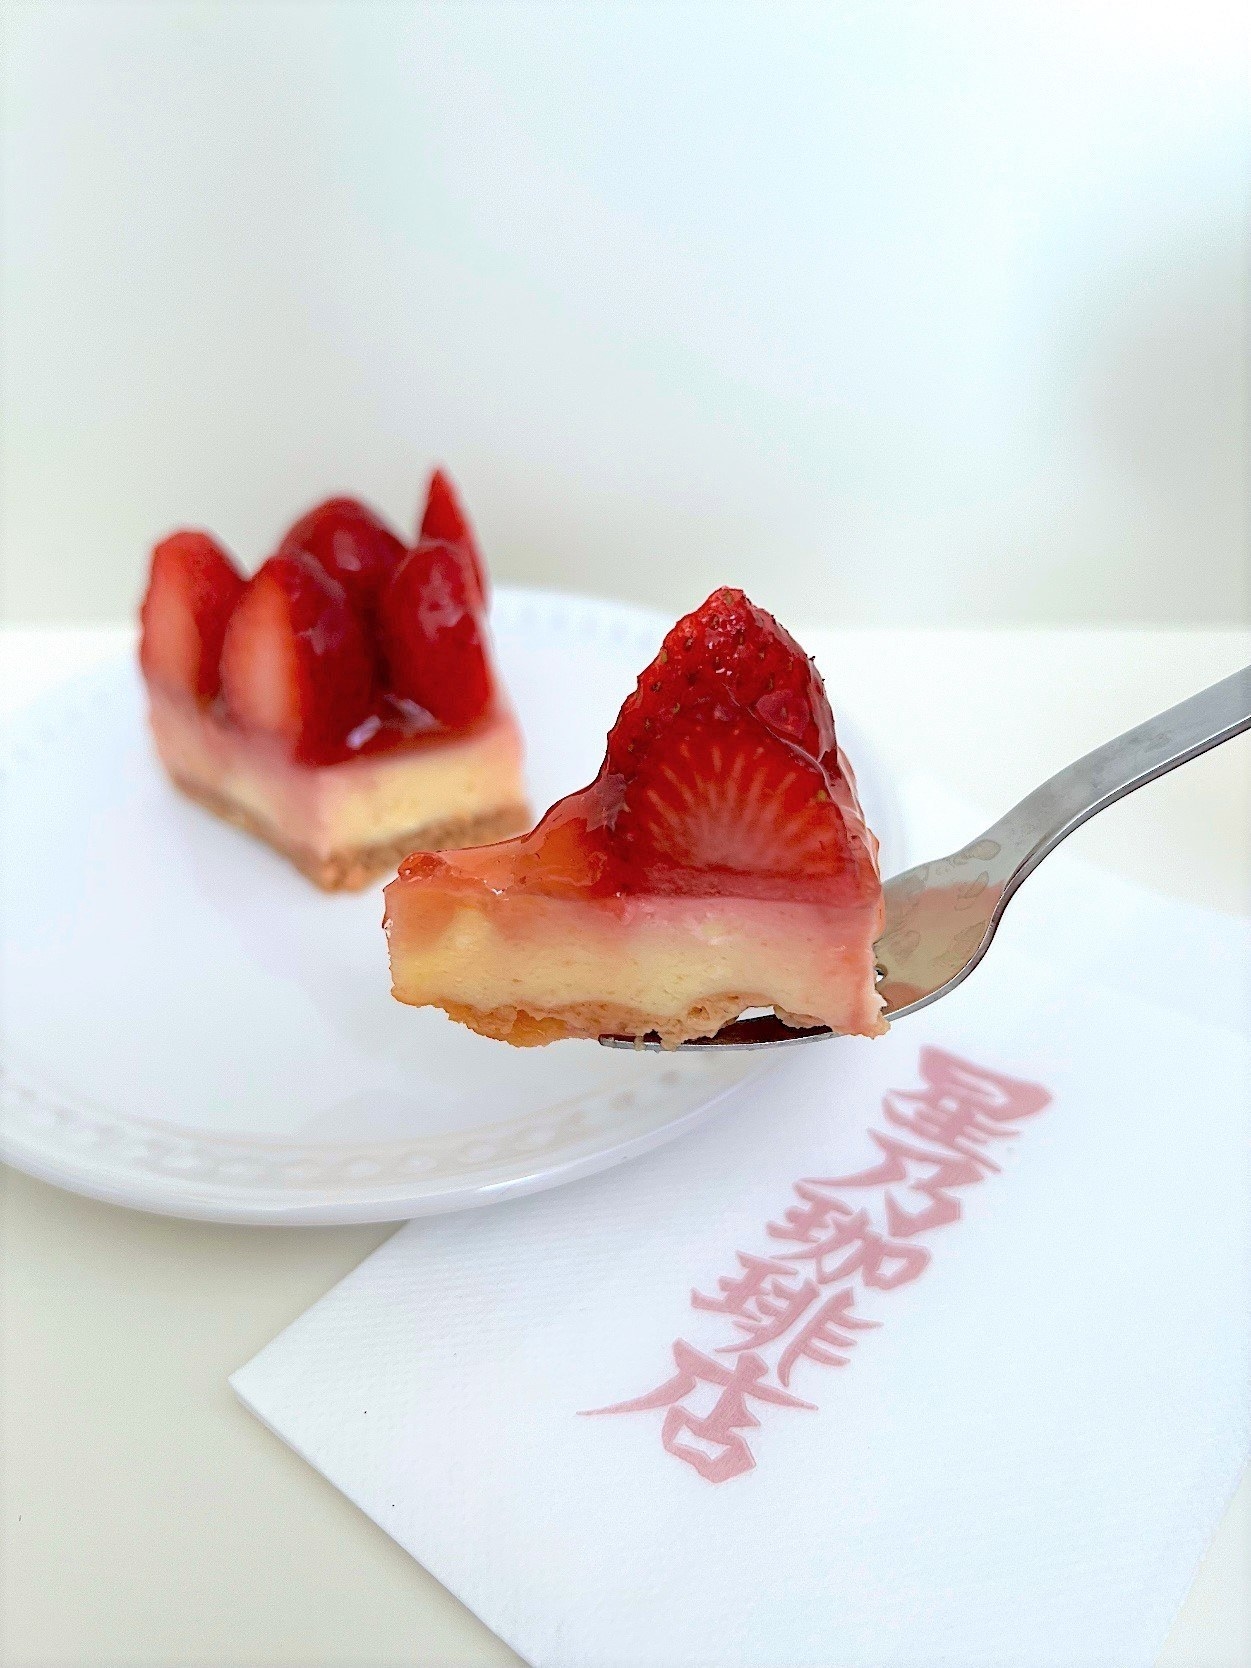 星野珈琲のおすすめスイーツ「苺のレアチーズケーキ」